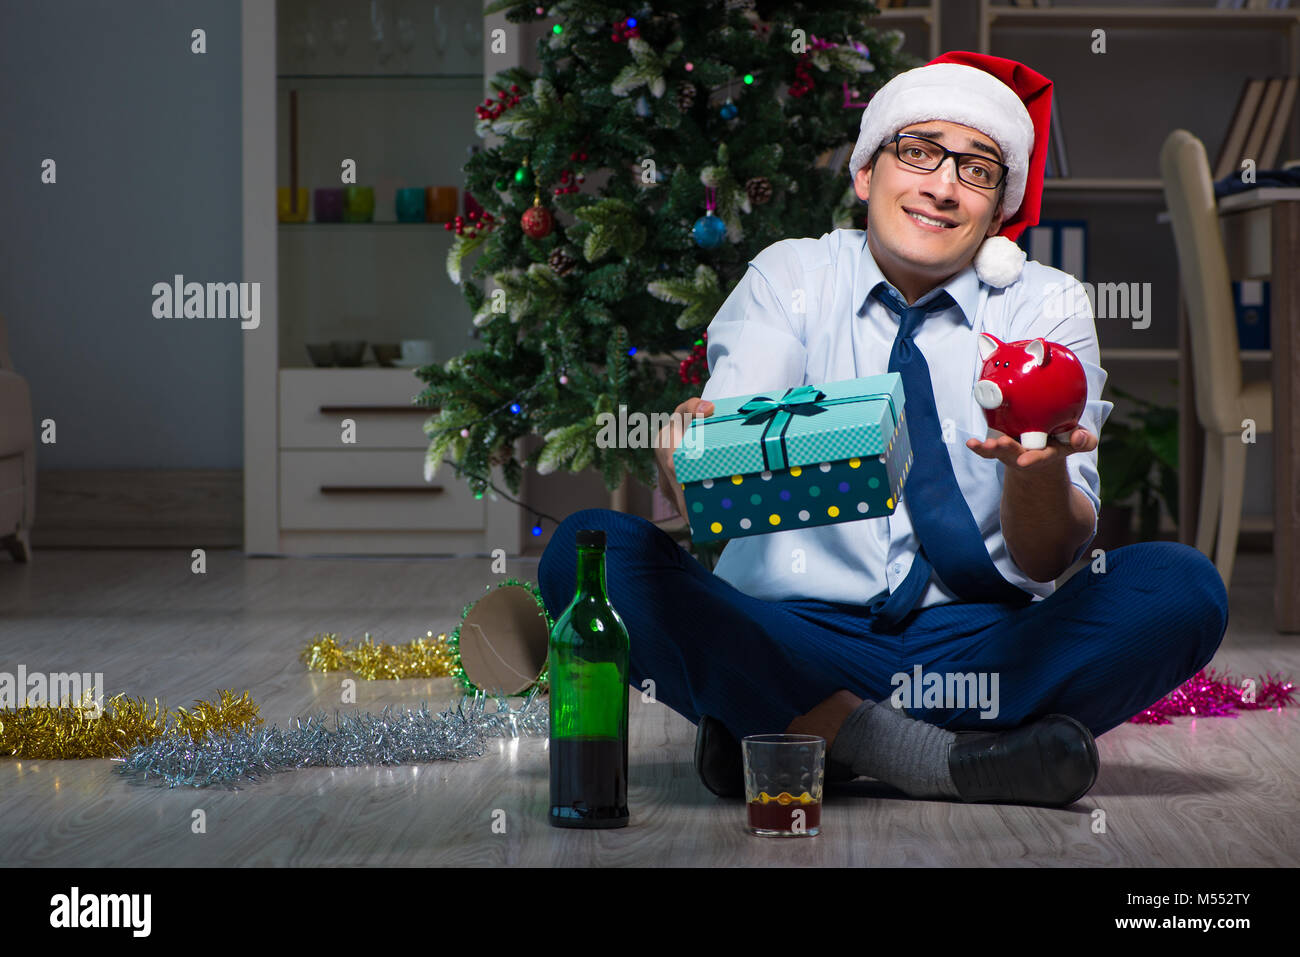 Geschäftsmann Weihnachten alleine zuhause feiern Stockfotografie - Alamy